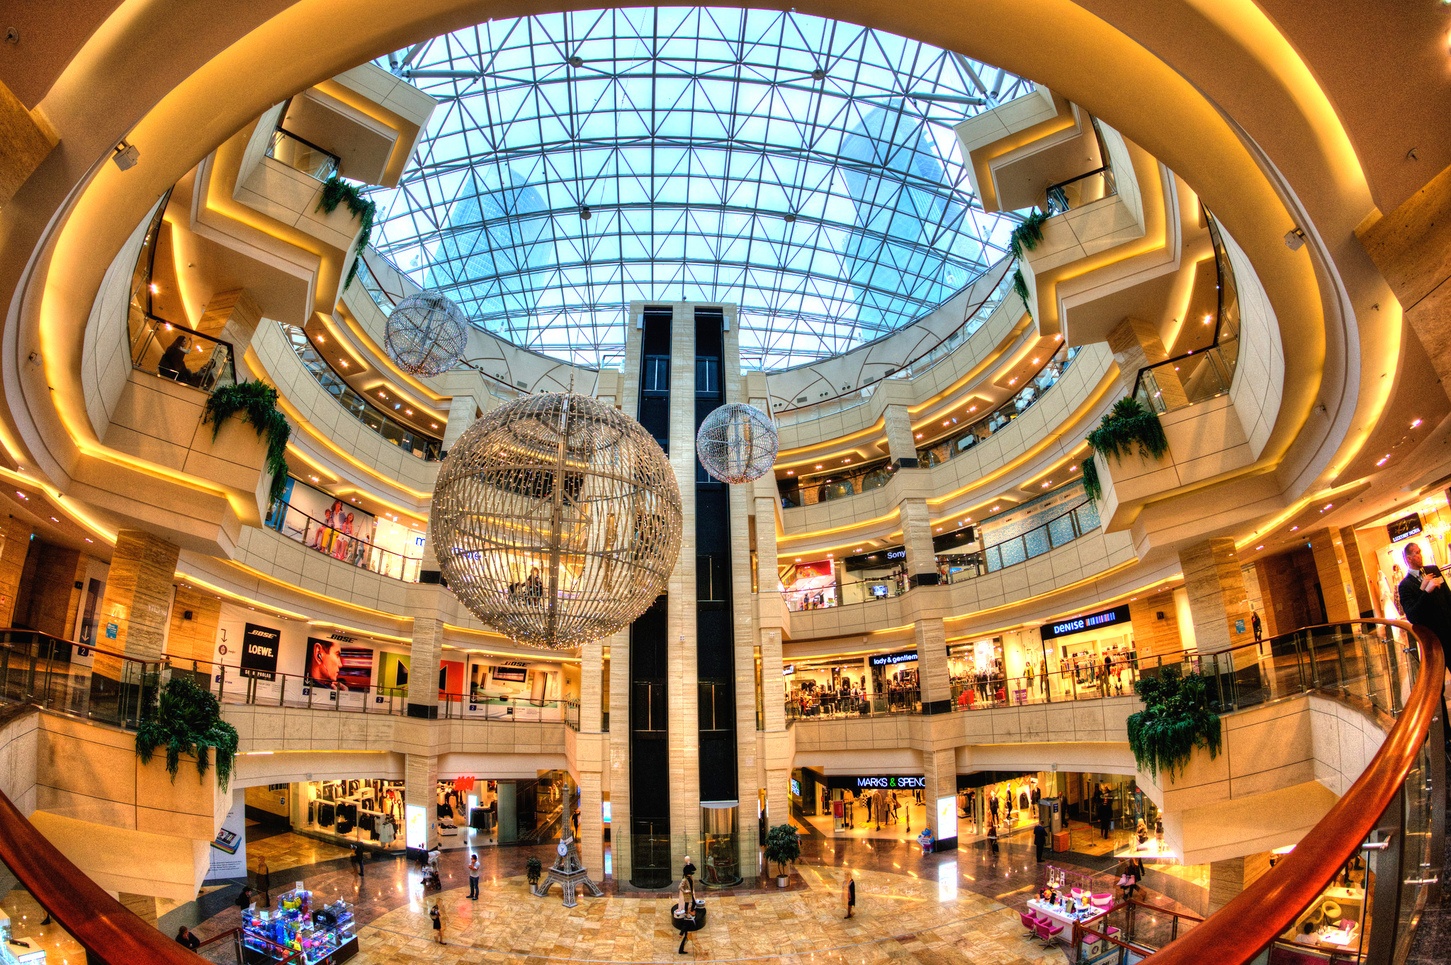 фото крупных торговых центров